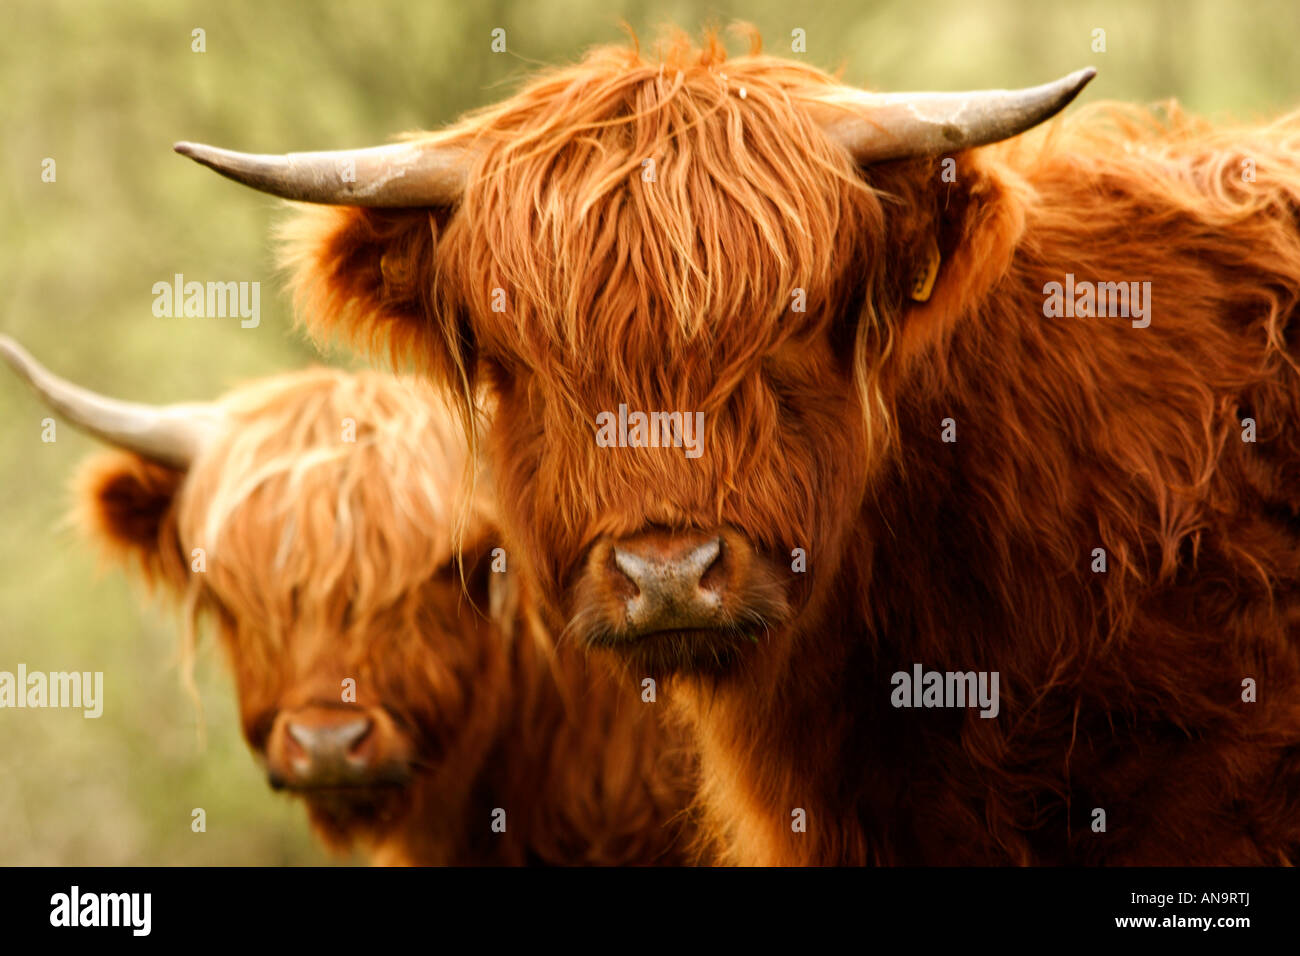 Europe England Yorkshire Highland Cattle Stock Photo